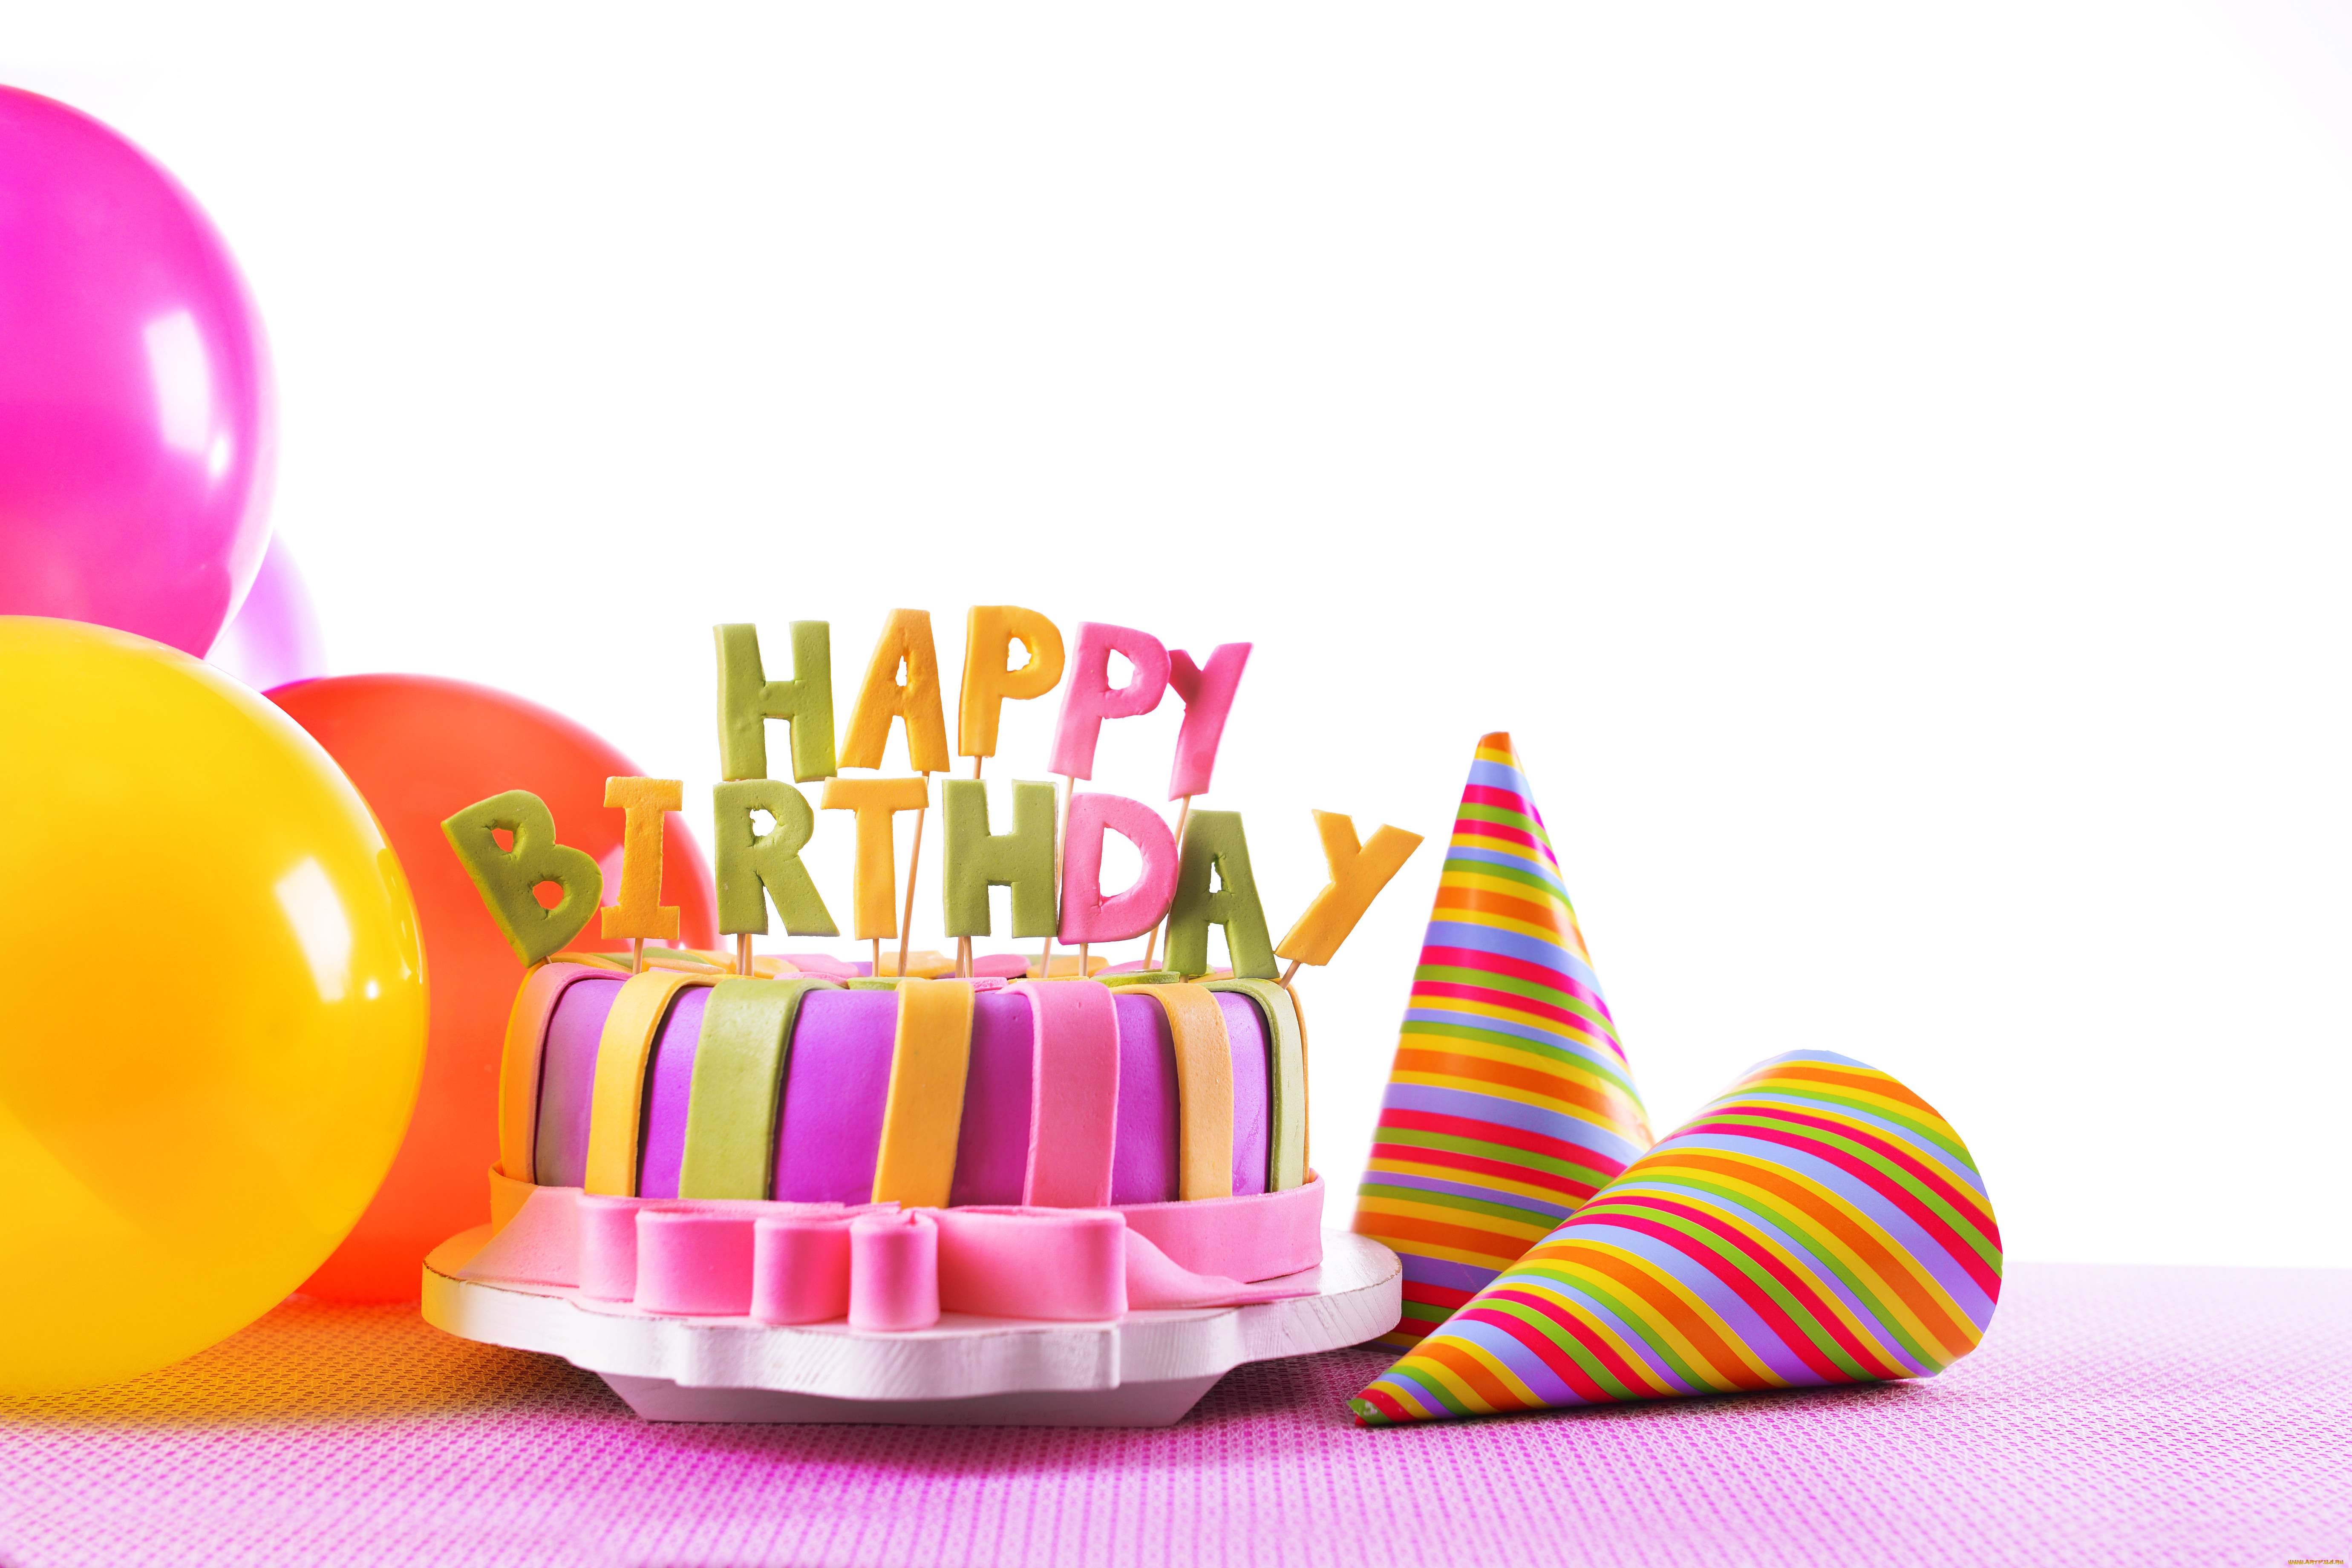 A birthday. С днем рождения. Тортик с днем рождения. Фон с днем рождения. С днём рождения КС тортиком.